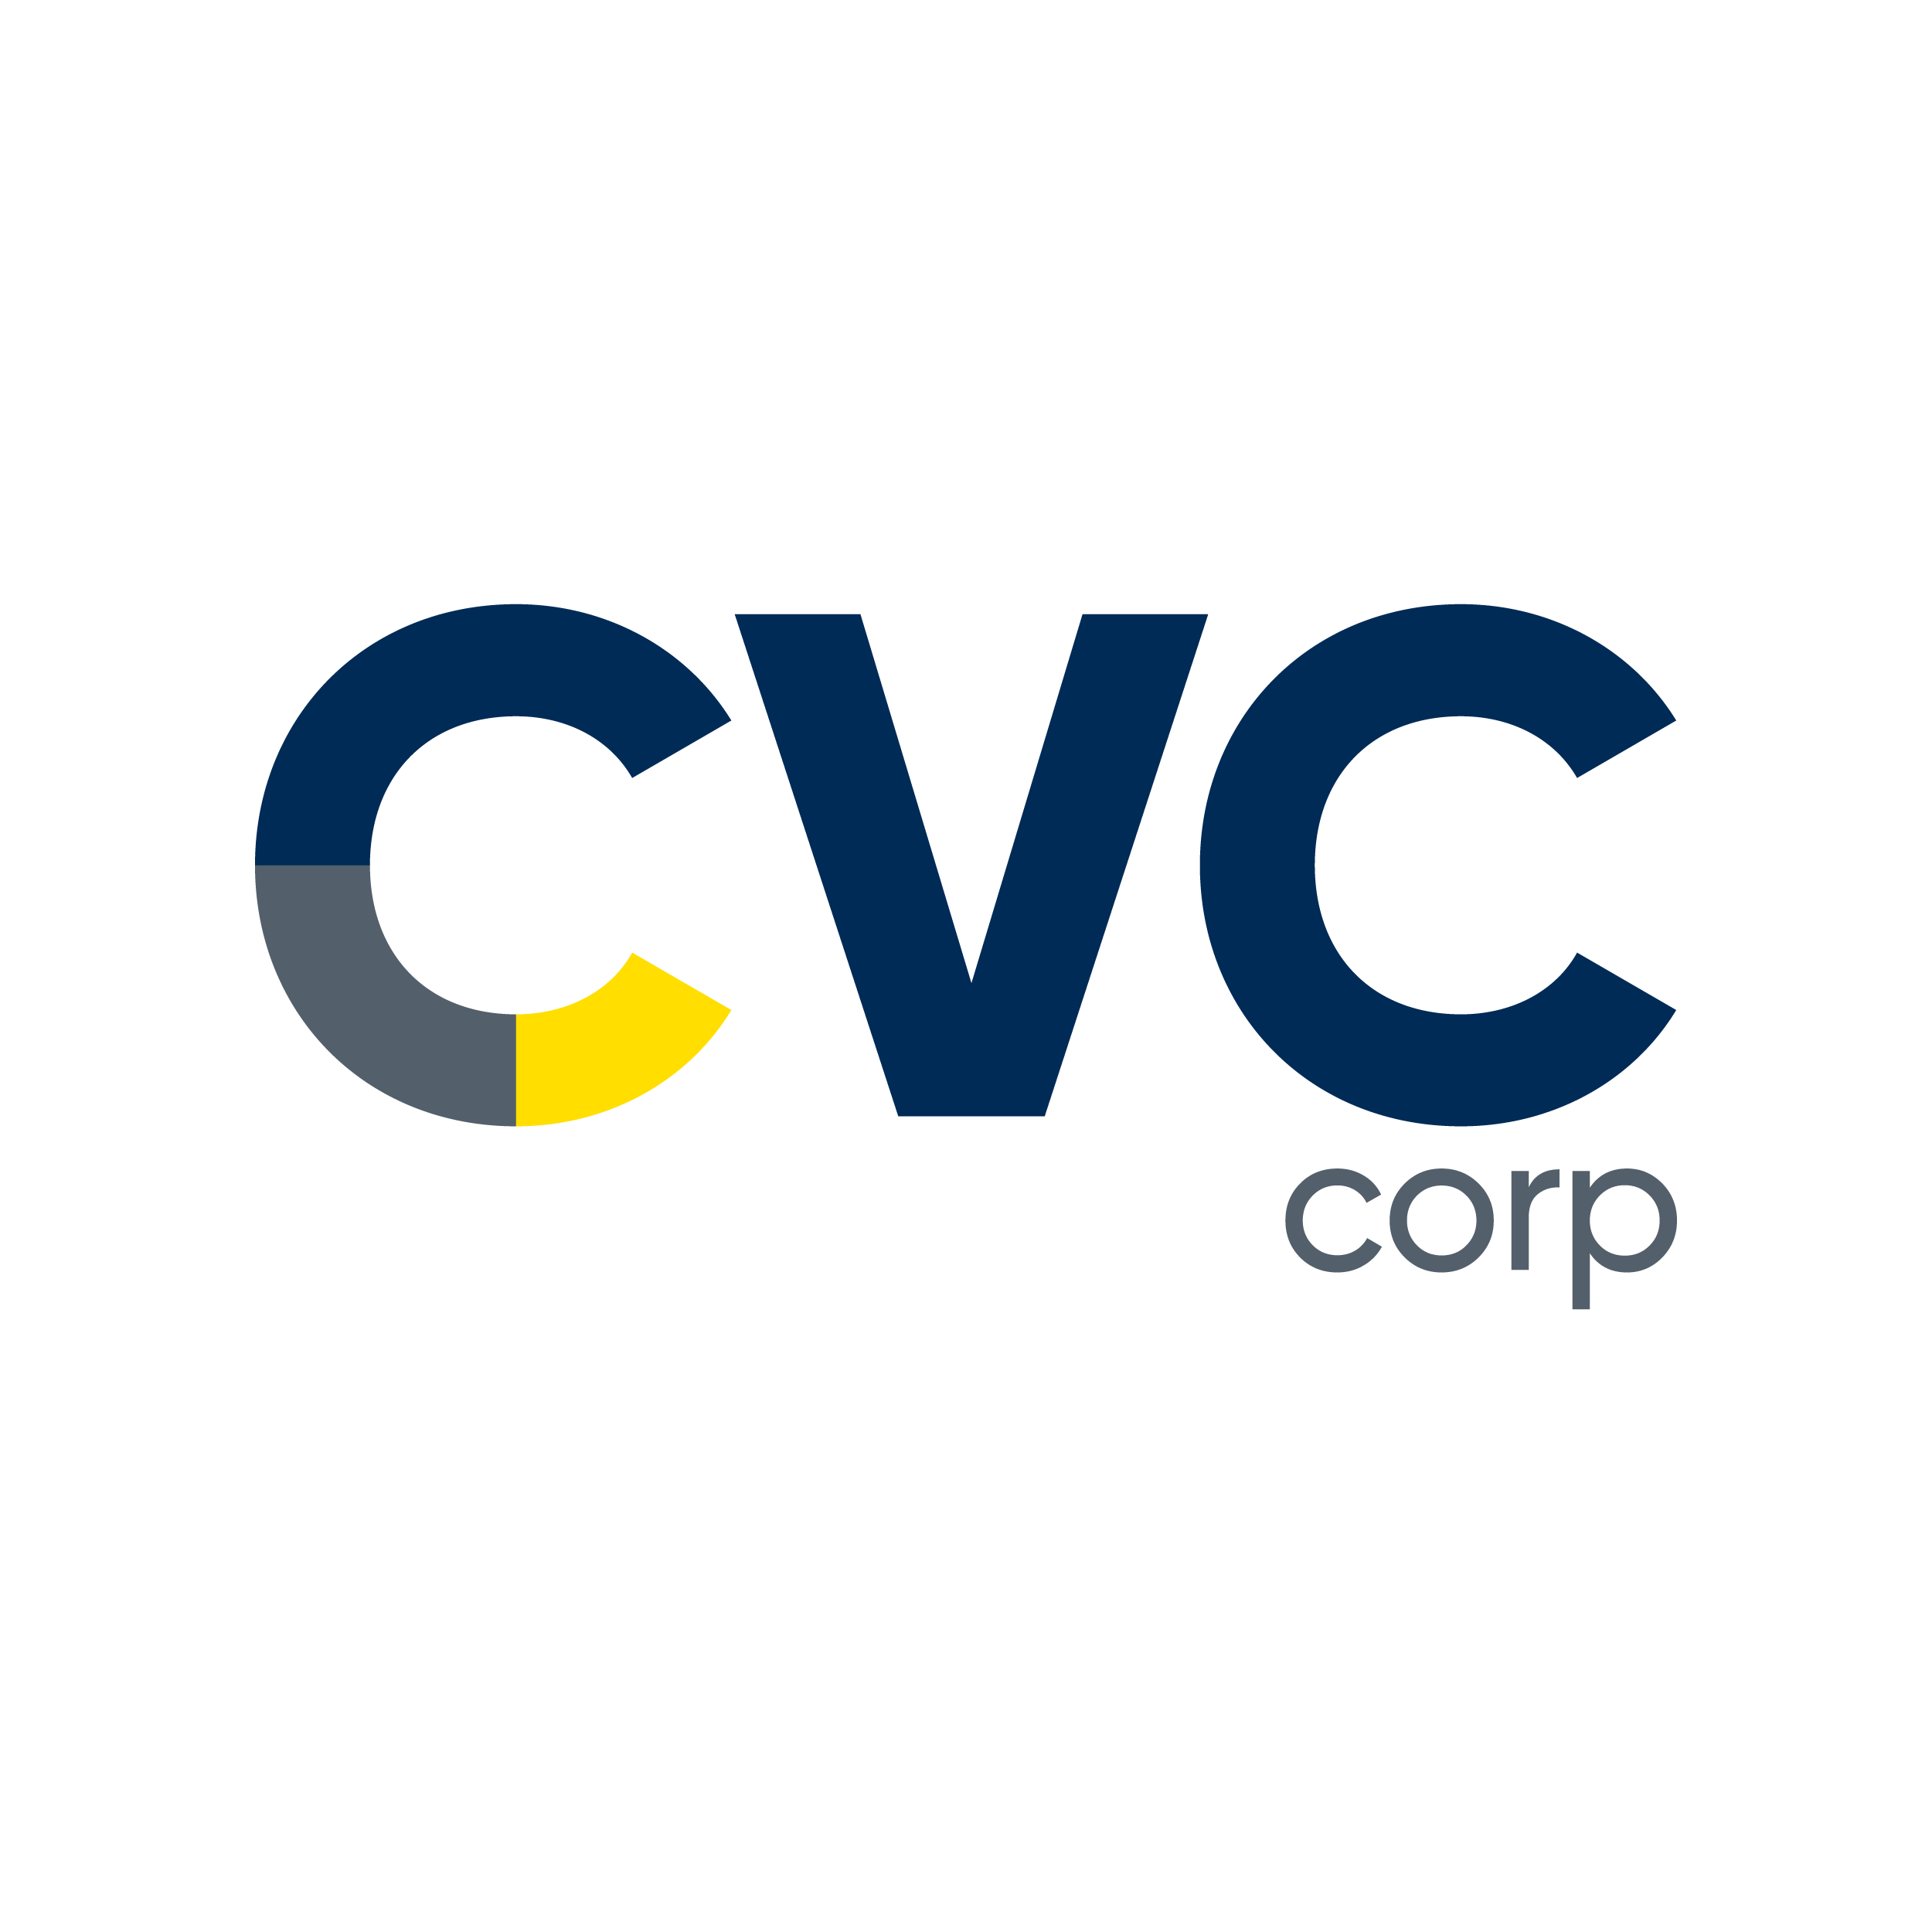 CVC corp